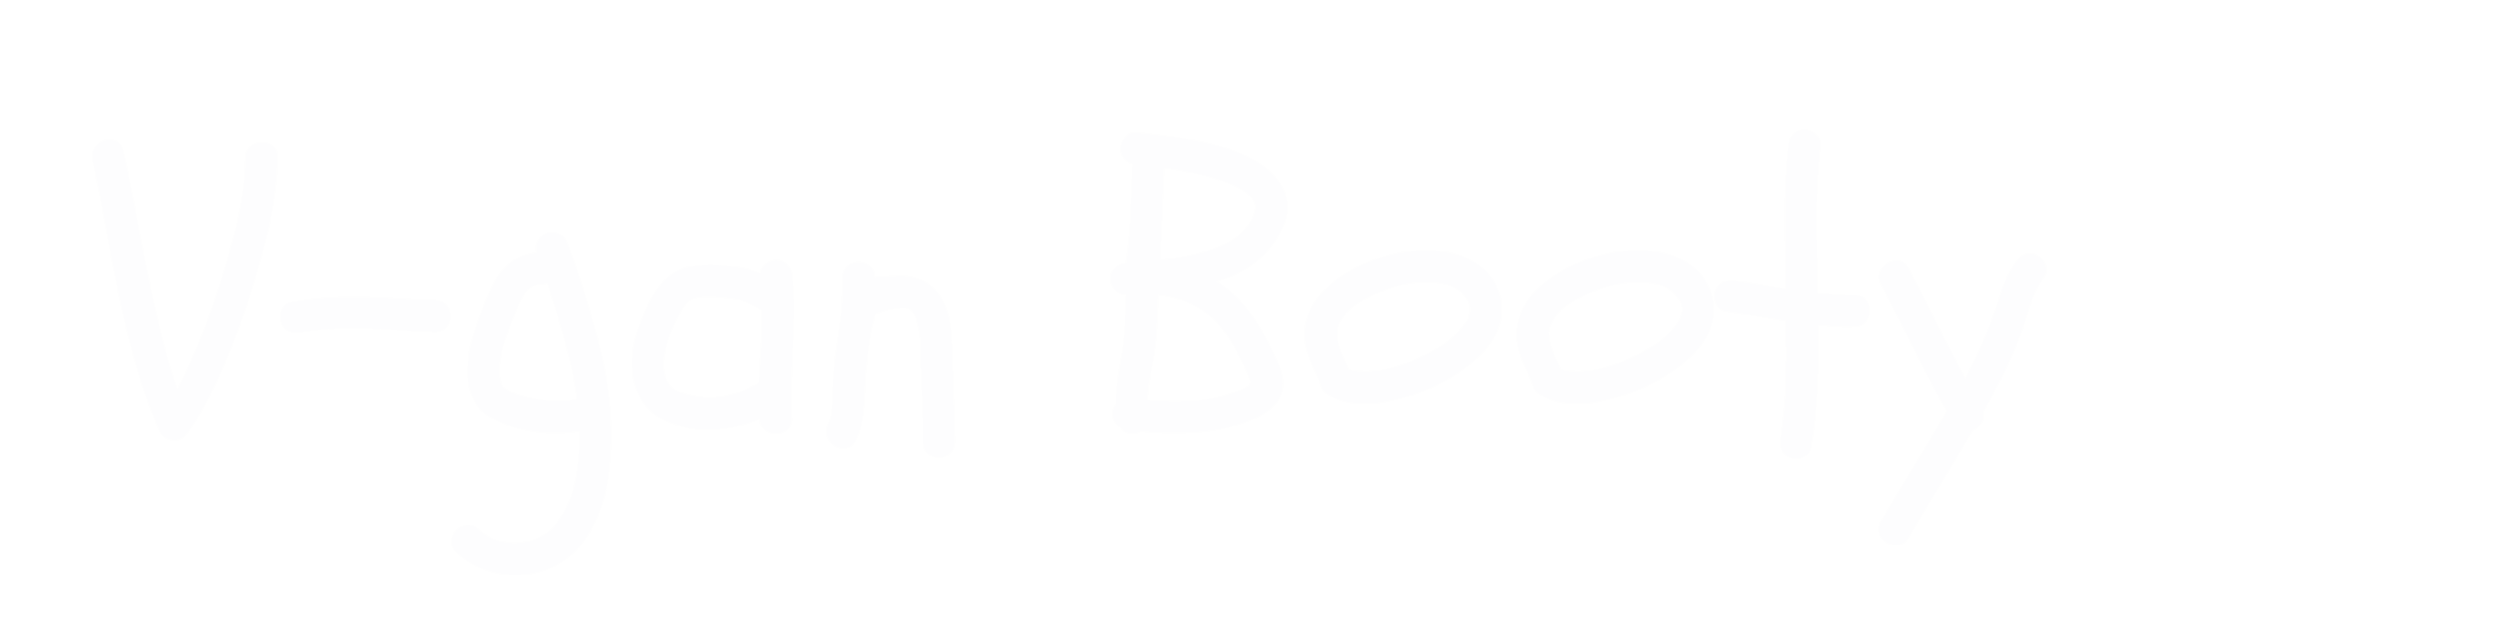 V-gan Booty